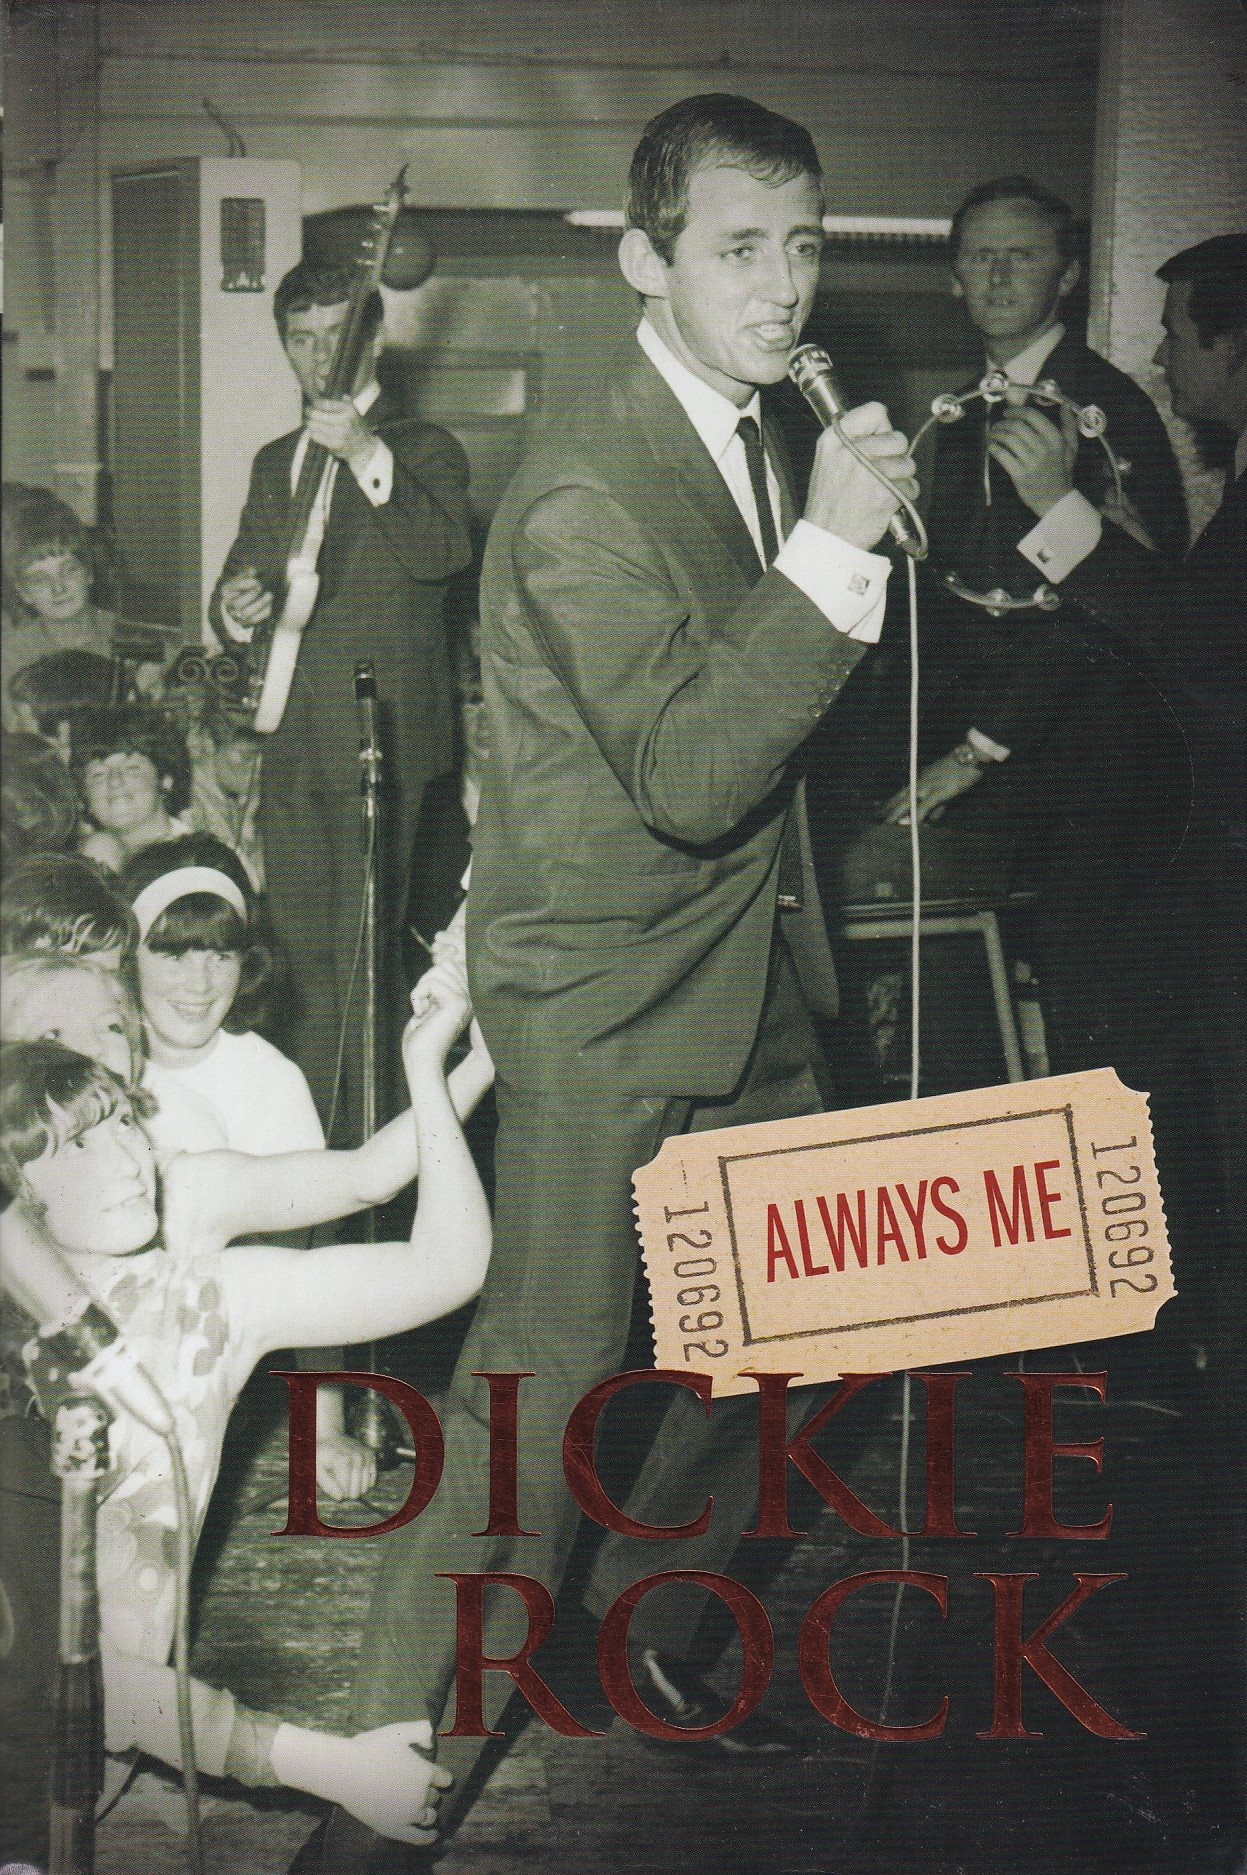 Dickie Rock: Always Me | Dickie Rock | Charlie Byrne's